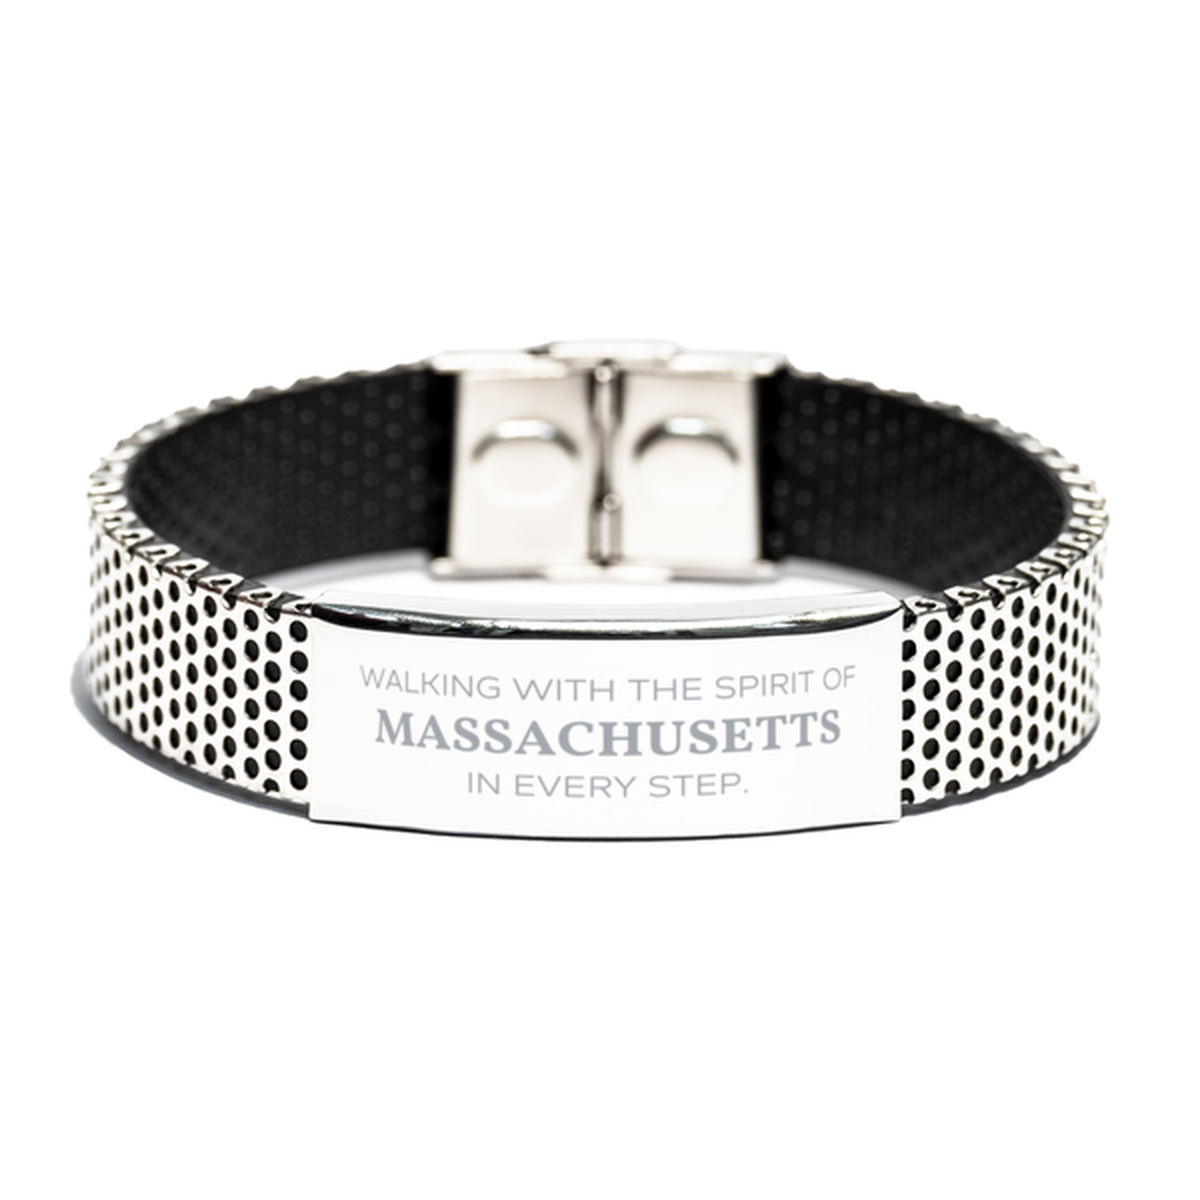 Massachusetts Gifts, Walking with the spirit, Love Massachusetts Birthday Christmas Stainless Steel Bracelet For Massachusetts People, Men, Women, Friends